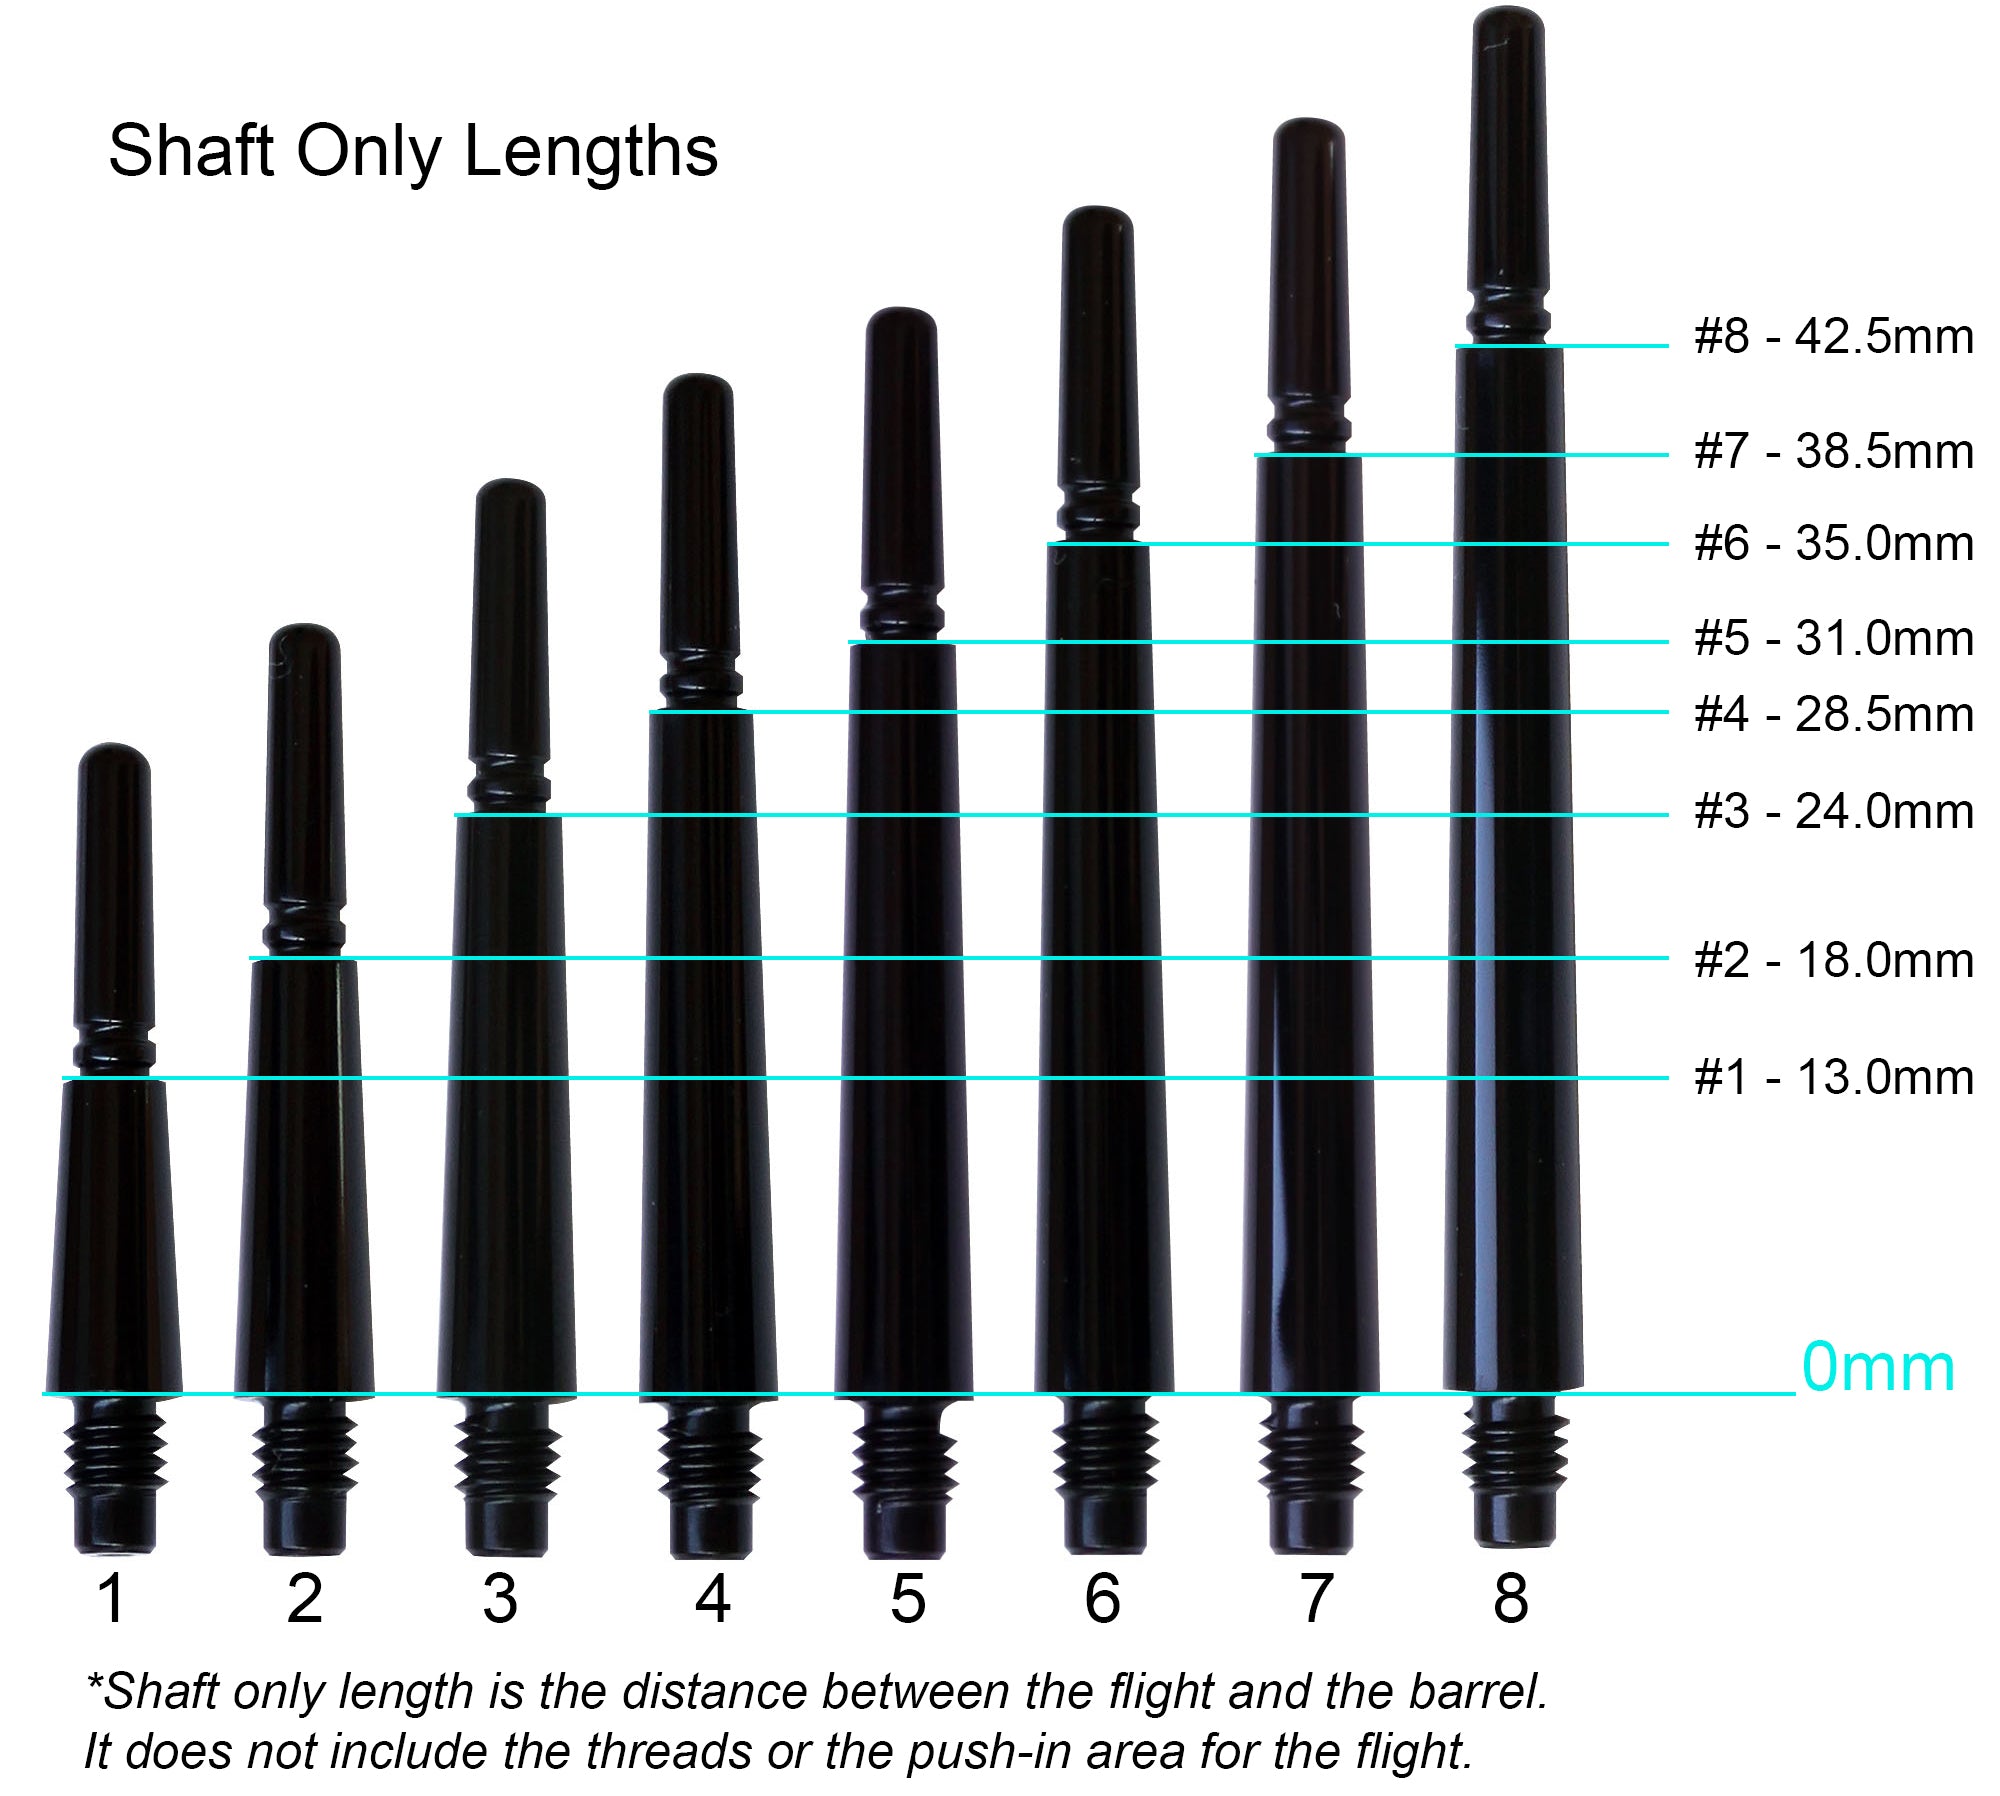 Fit Flight Gear Slim Spinning Dart Shafts - Short #3 (24.0mm) Clear